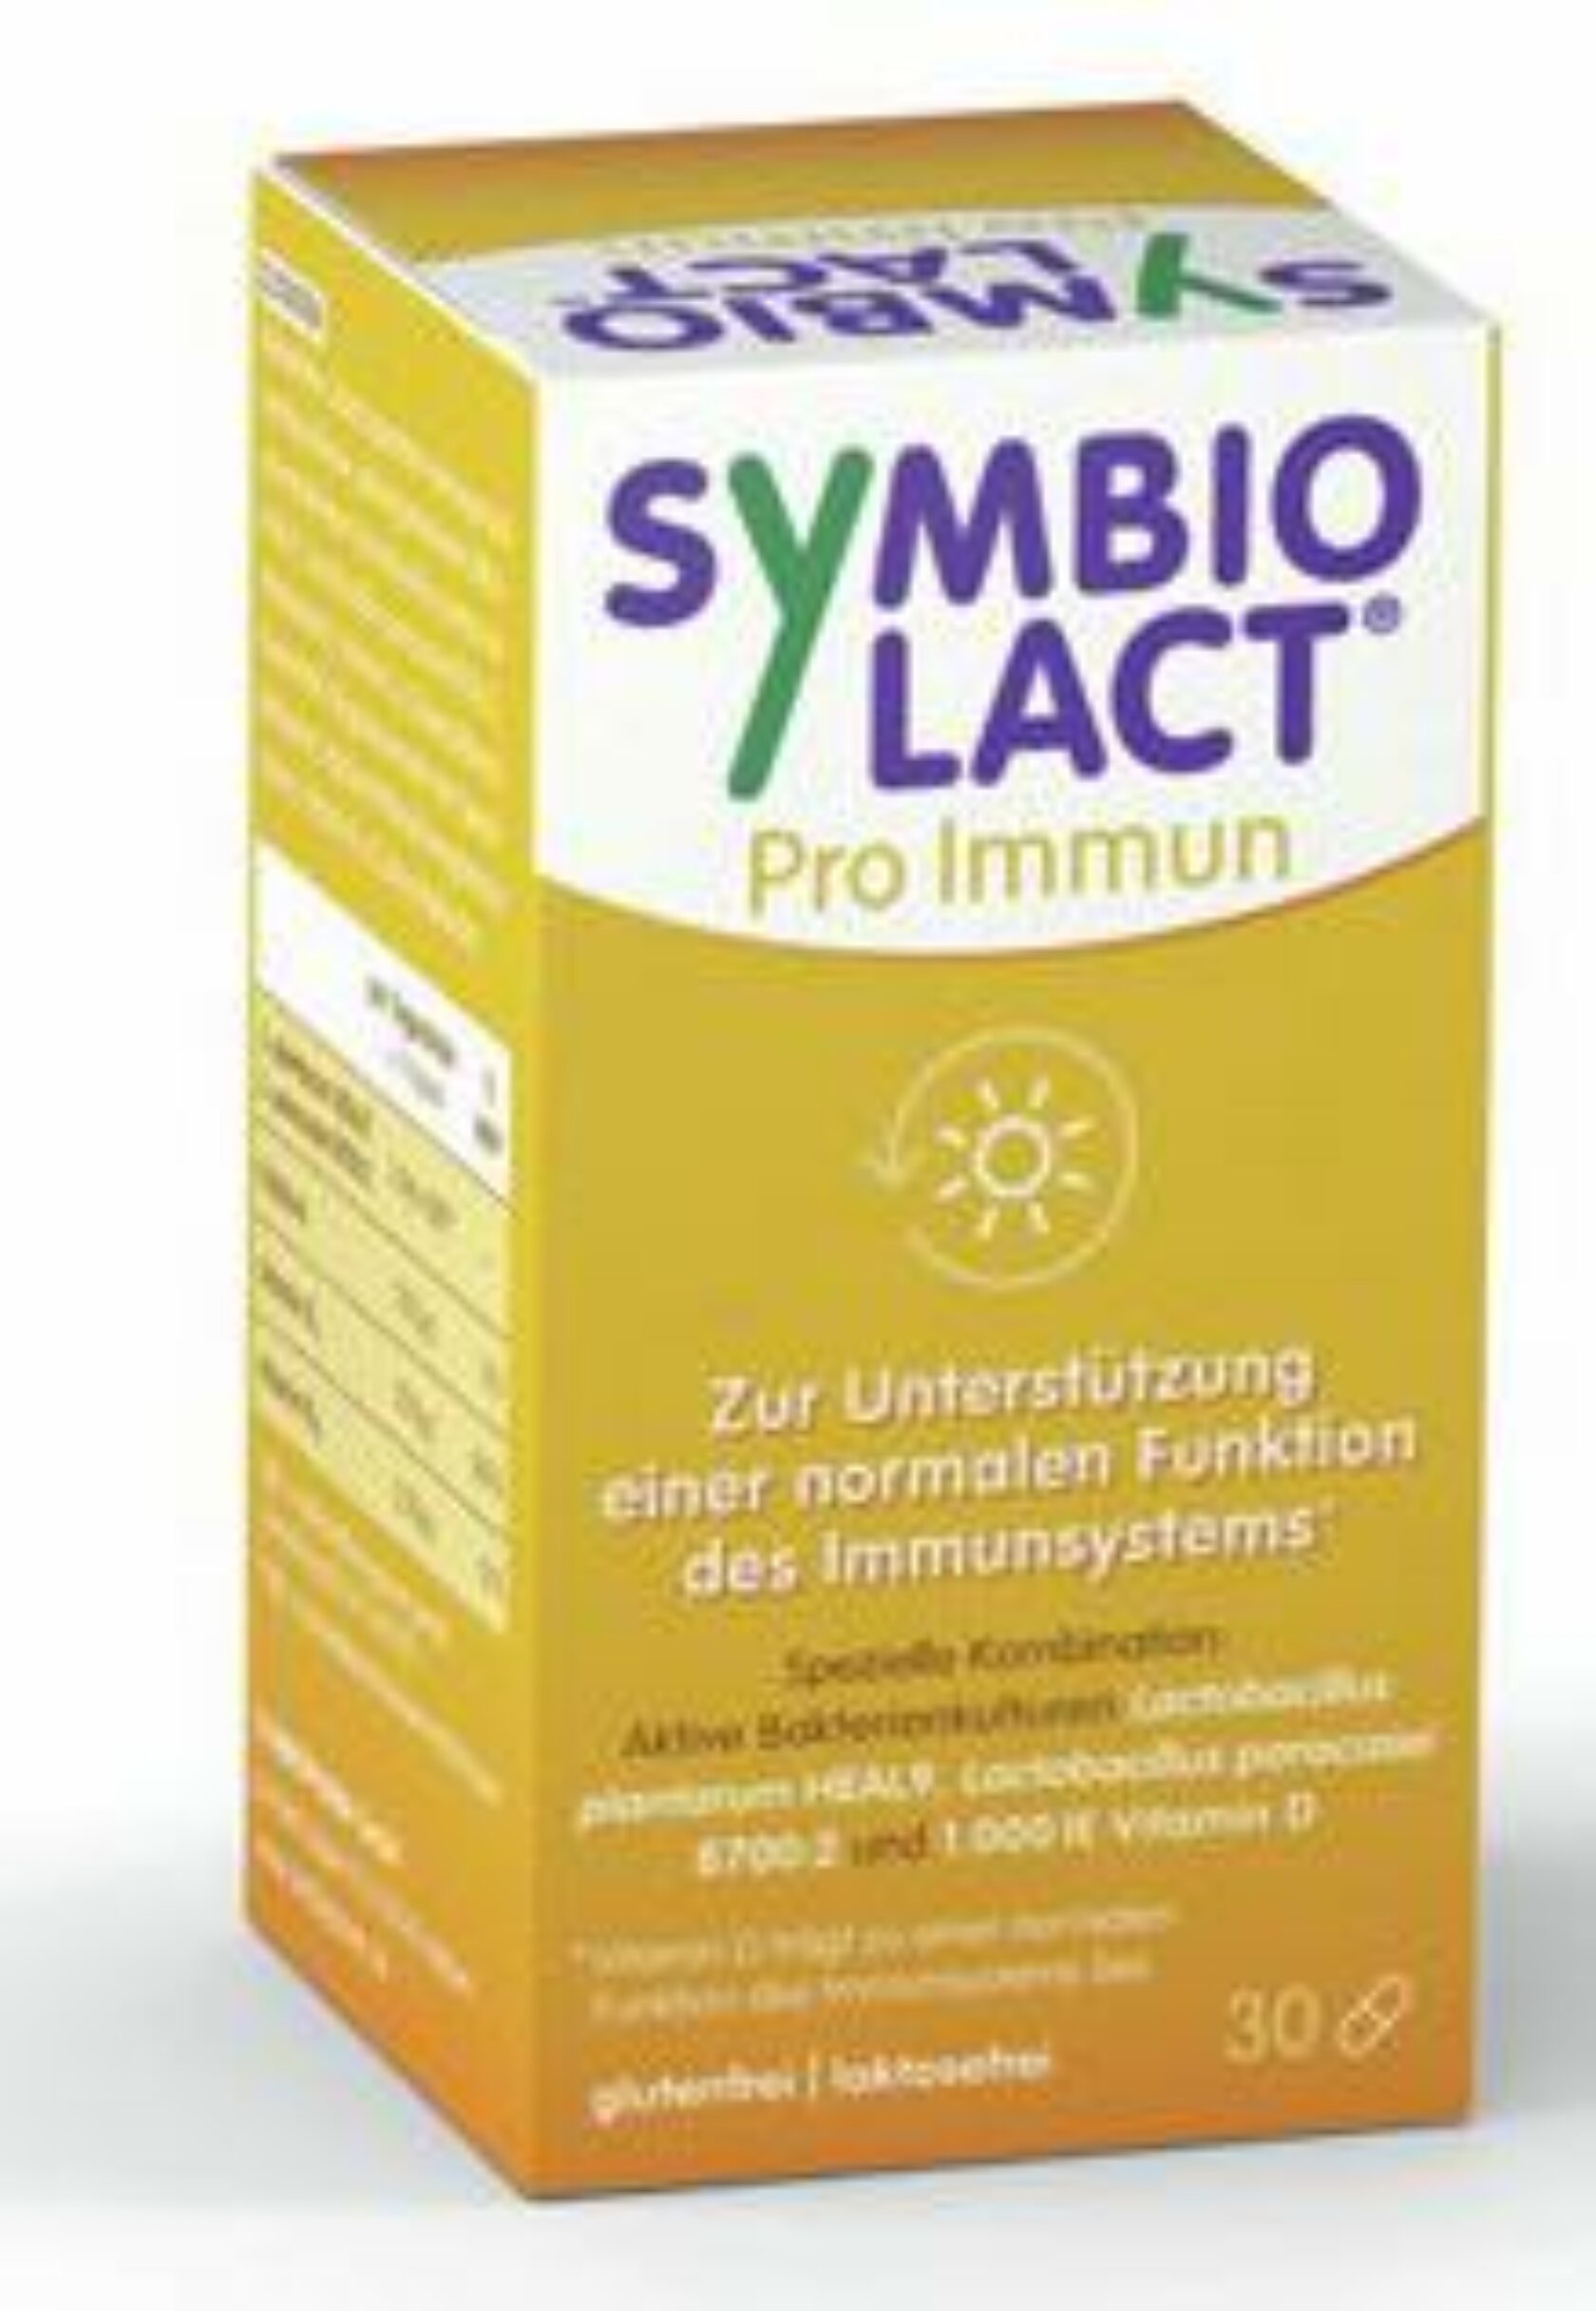 Produktpackung von SymbioLact